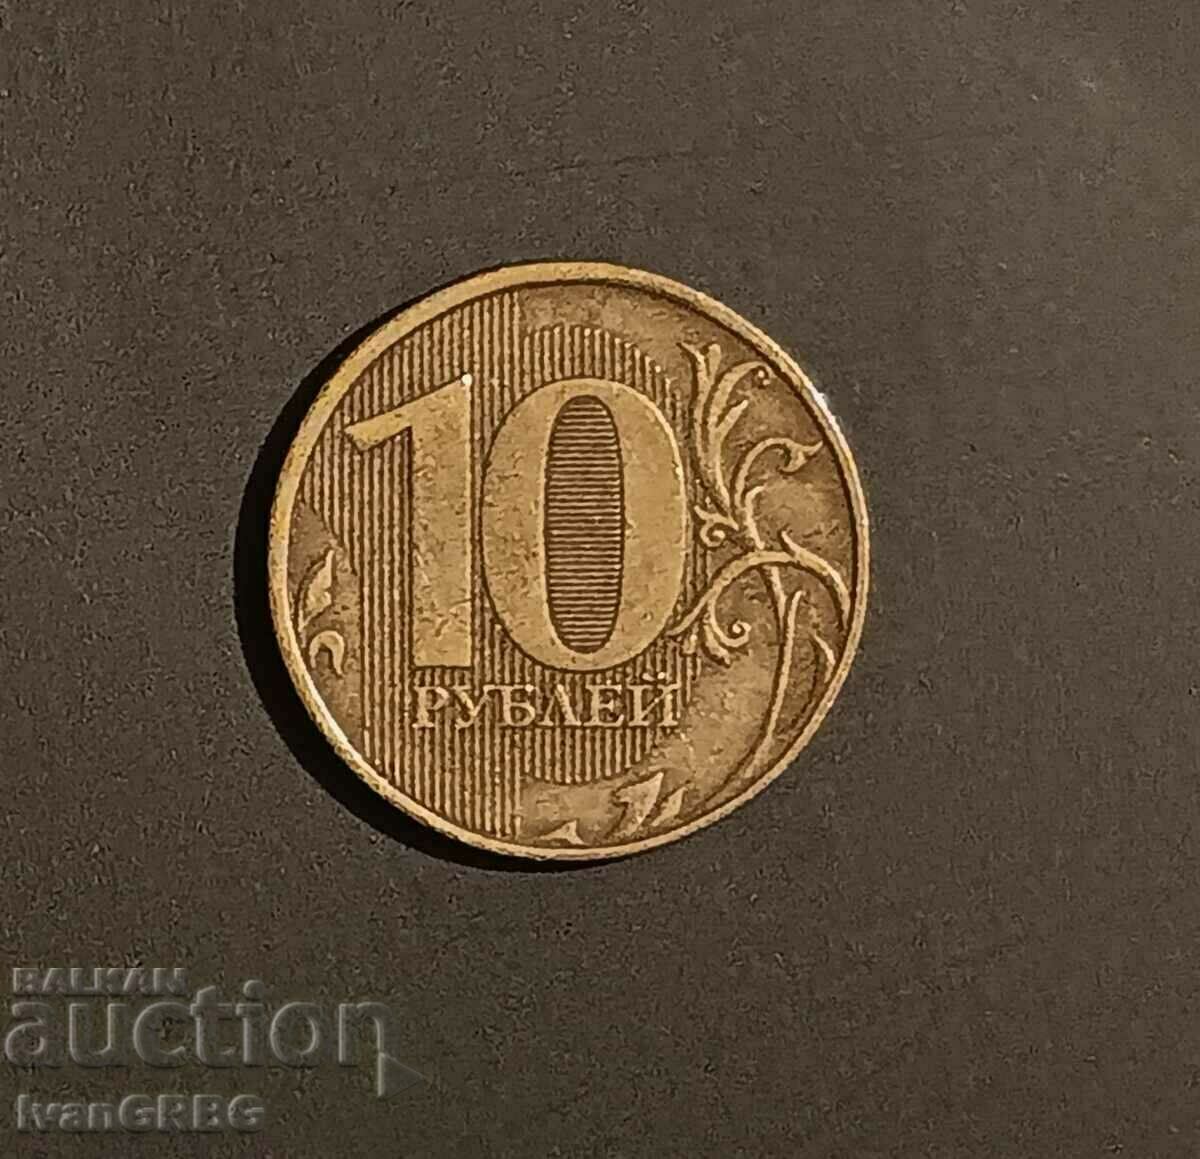 10 ρούβλια 2012 Ρωσία, Ρωσική Ομοσπονδία, ρωσικό νόμισμα